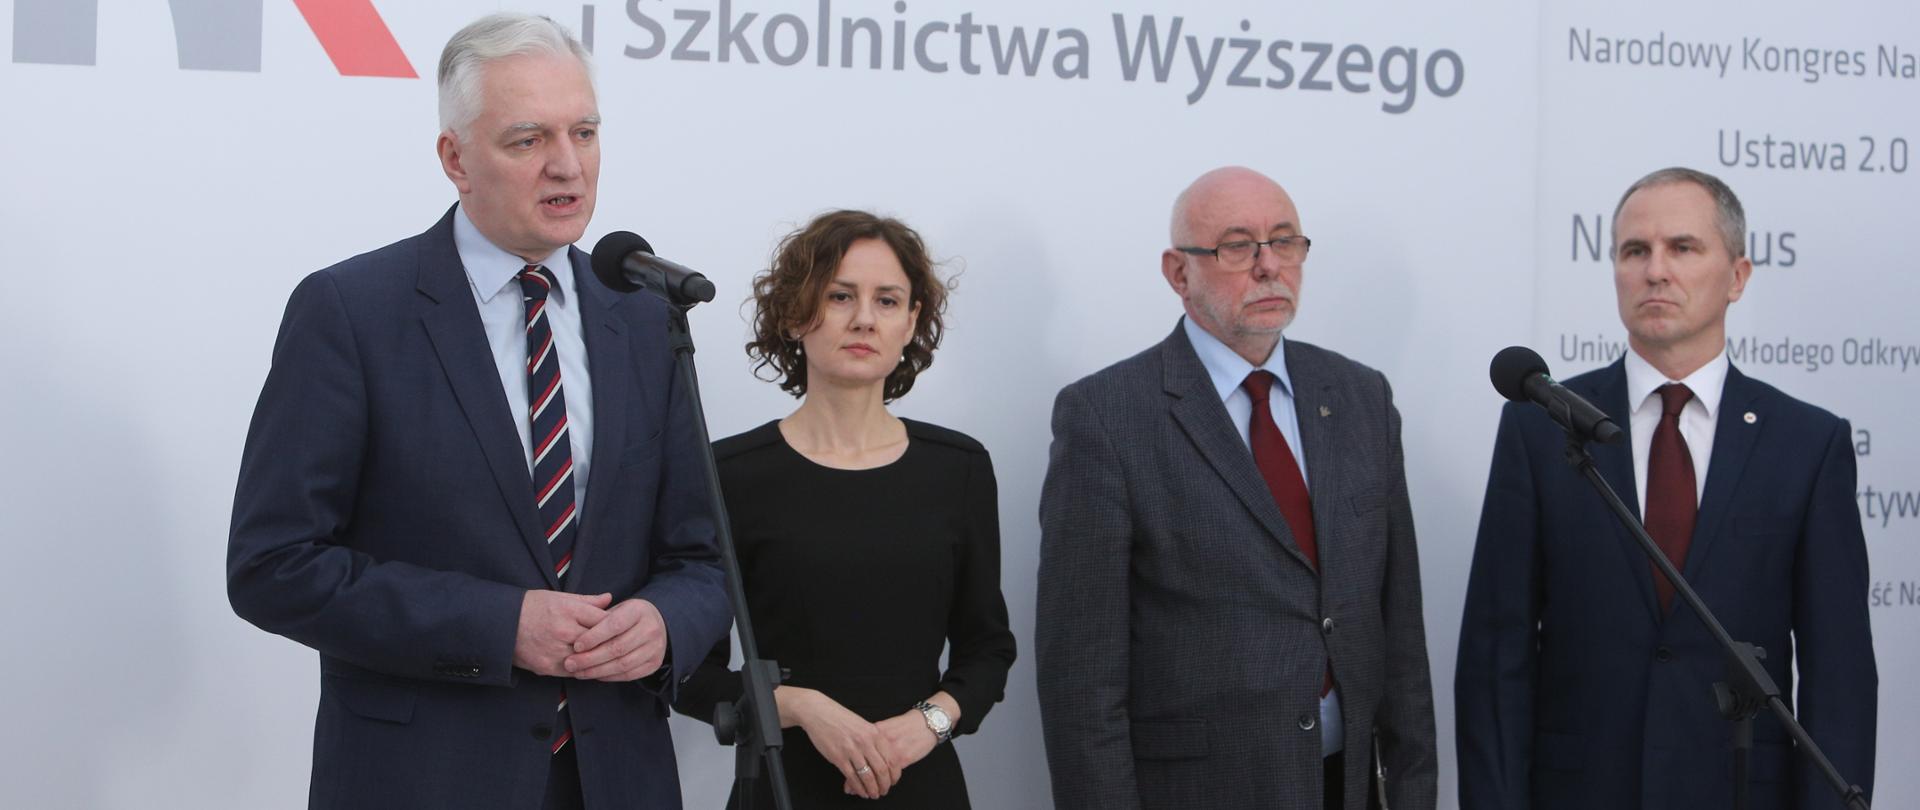 Na zdjęciu widać przemawiającego do mikrofonu wicepremiera Jarosława Gowina. Na scenie, obok premiera, stoją Izabela Żmudka, zastępca dyrektora NCBR oraz dwóch rektorów.